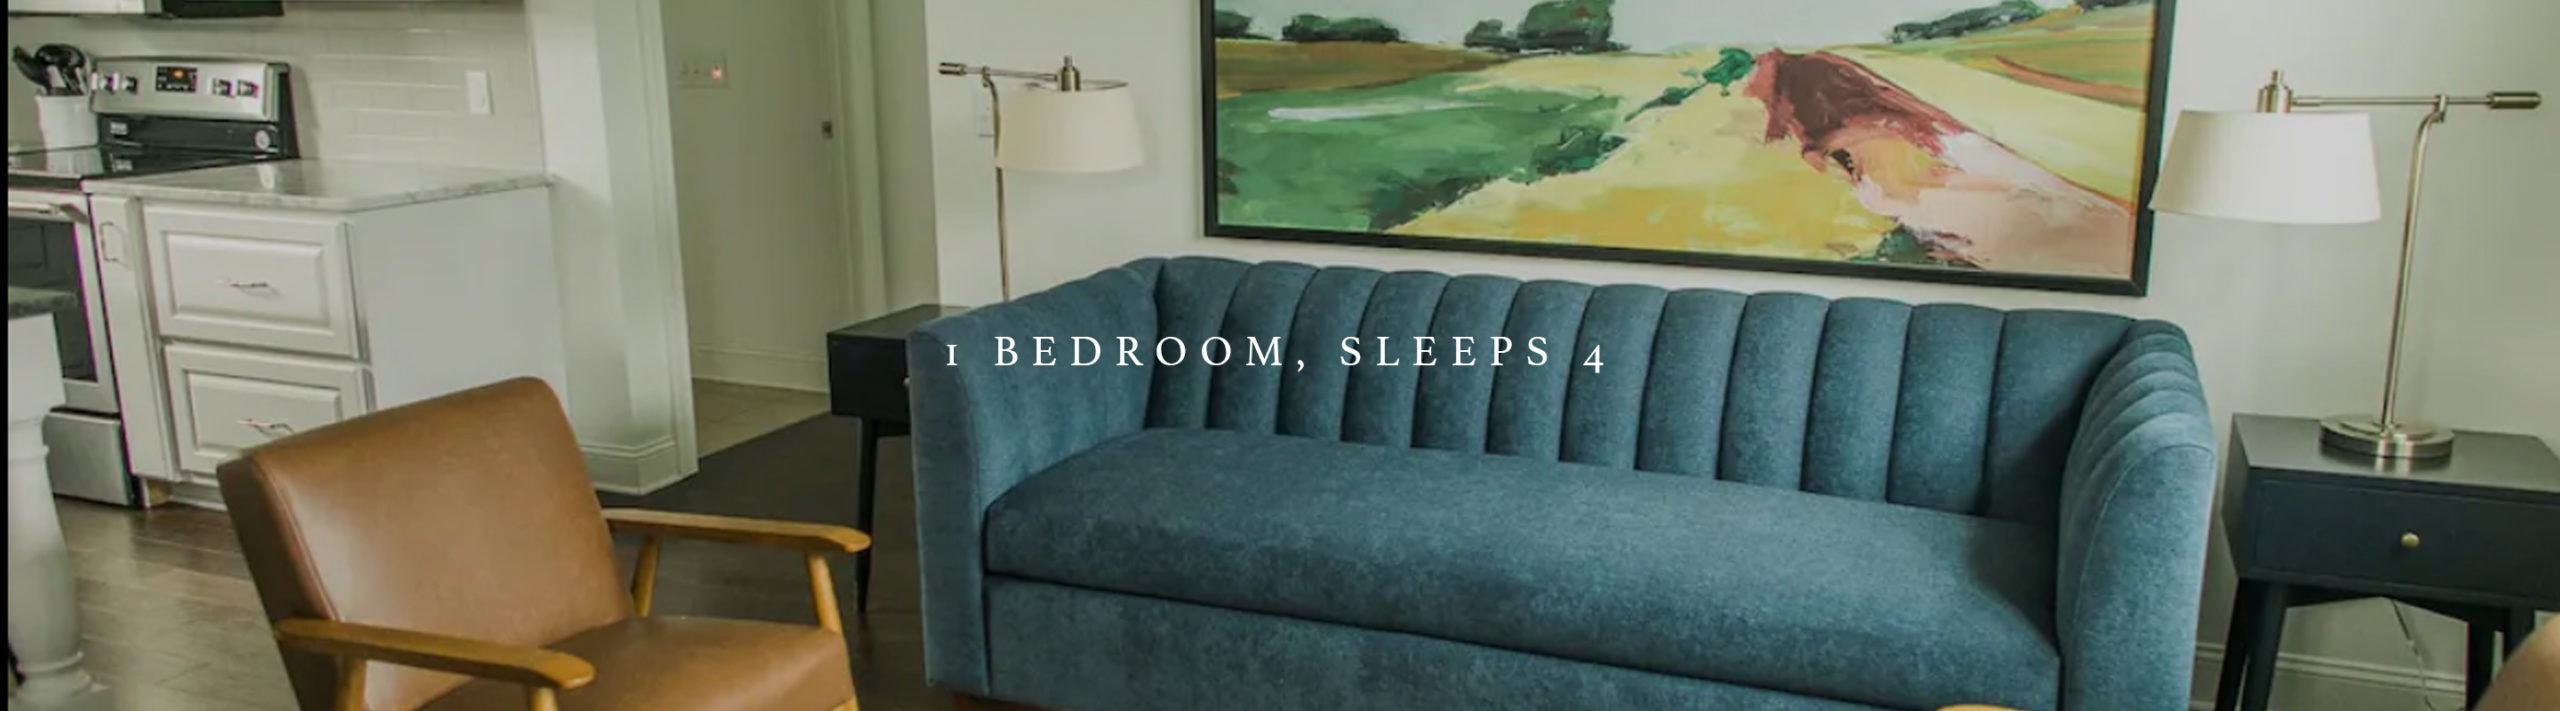 accommodations - 1 bedroom sleeps 4